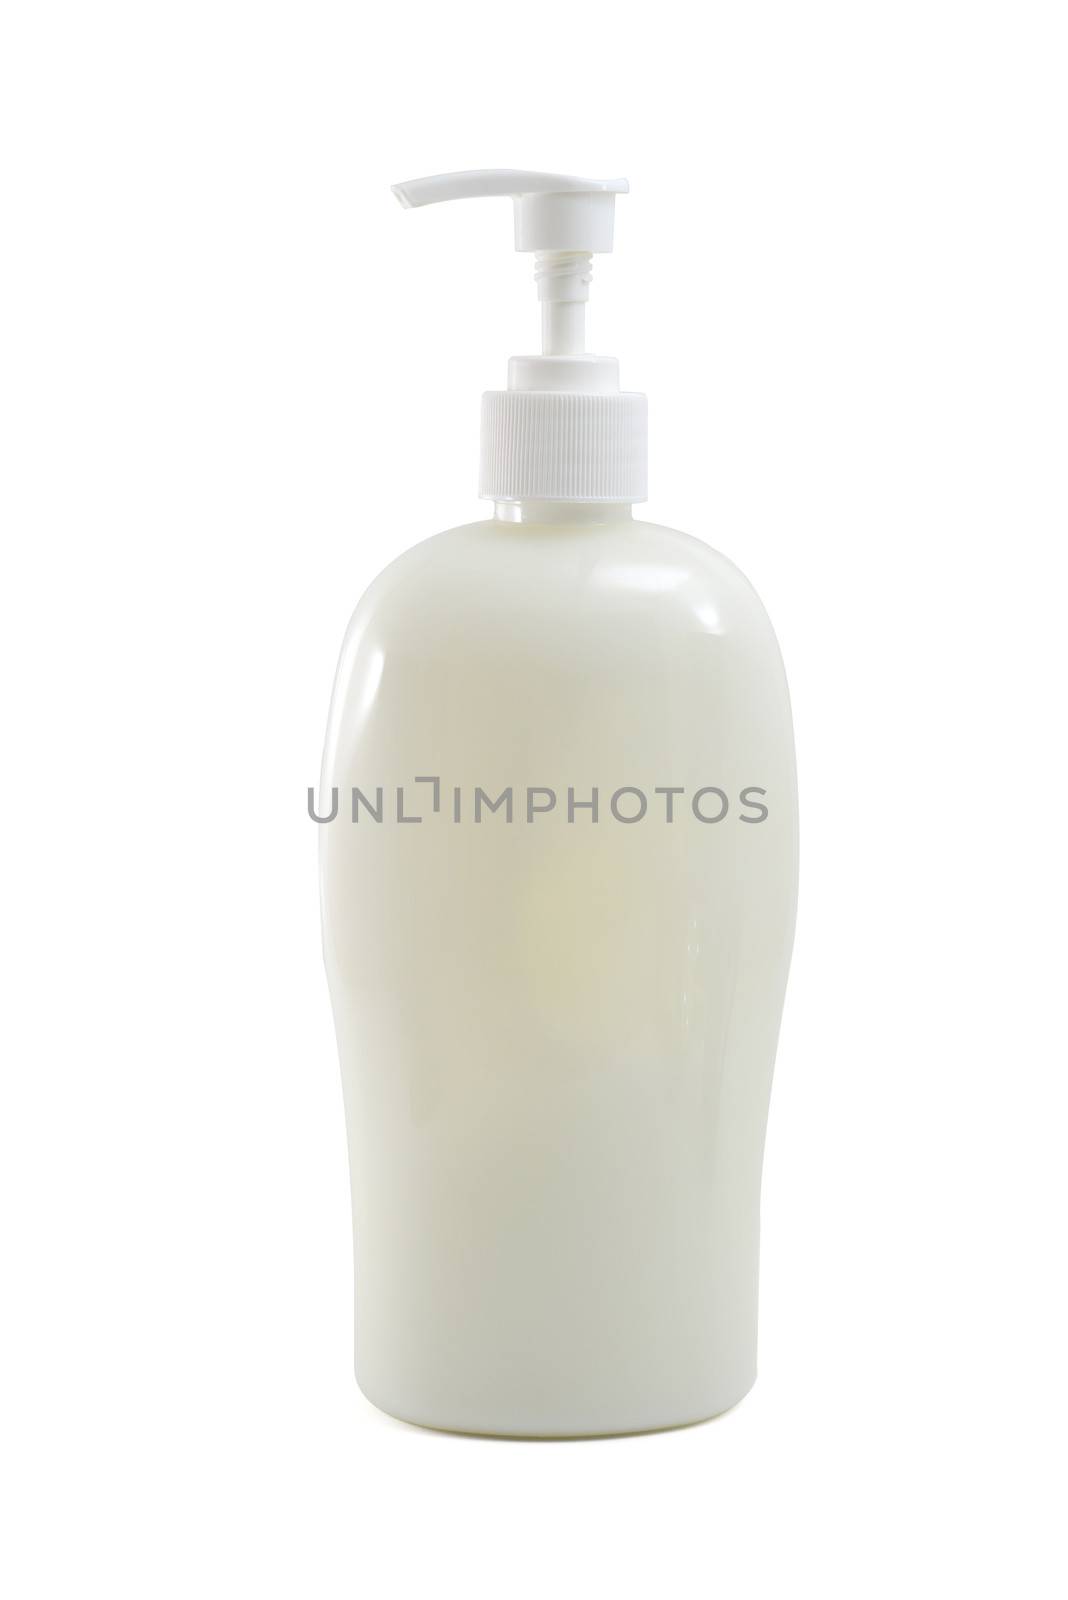 white bottles by antpkr